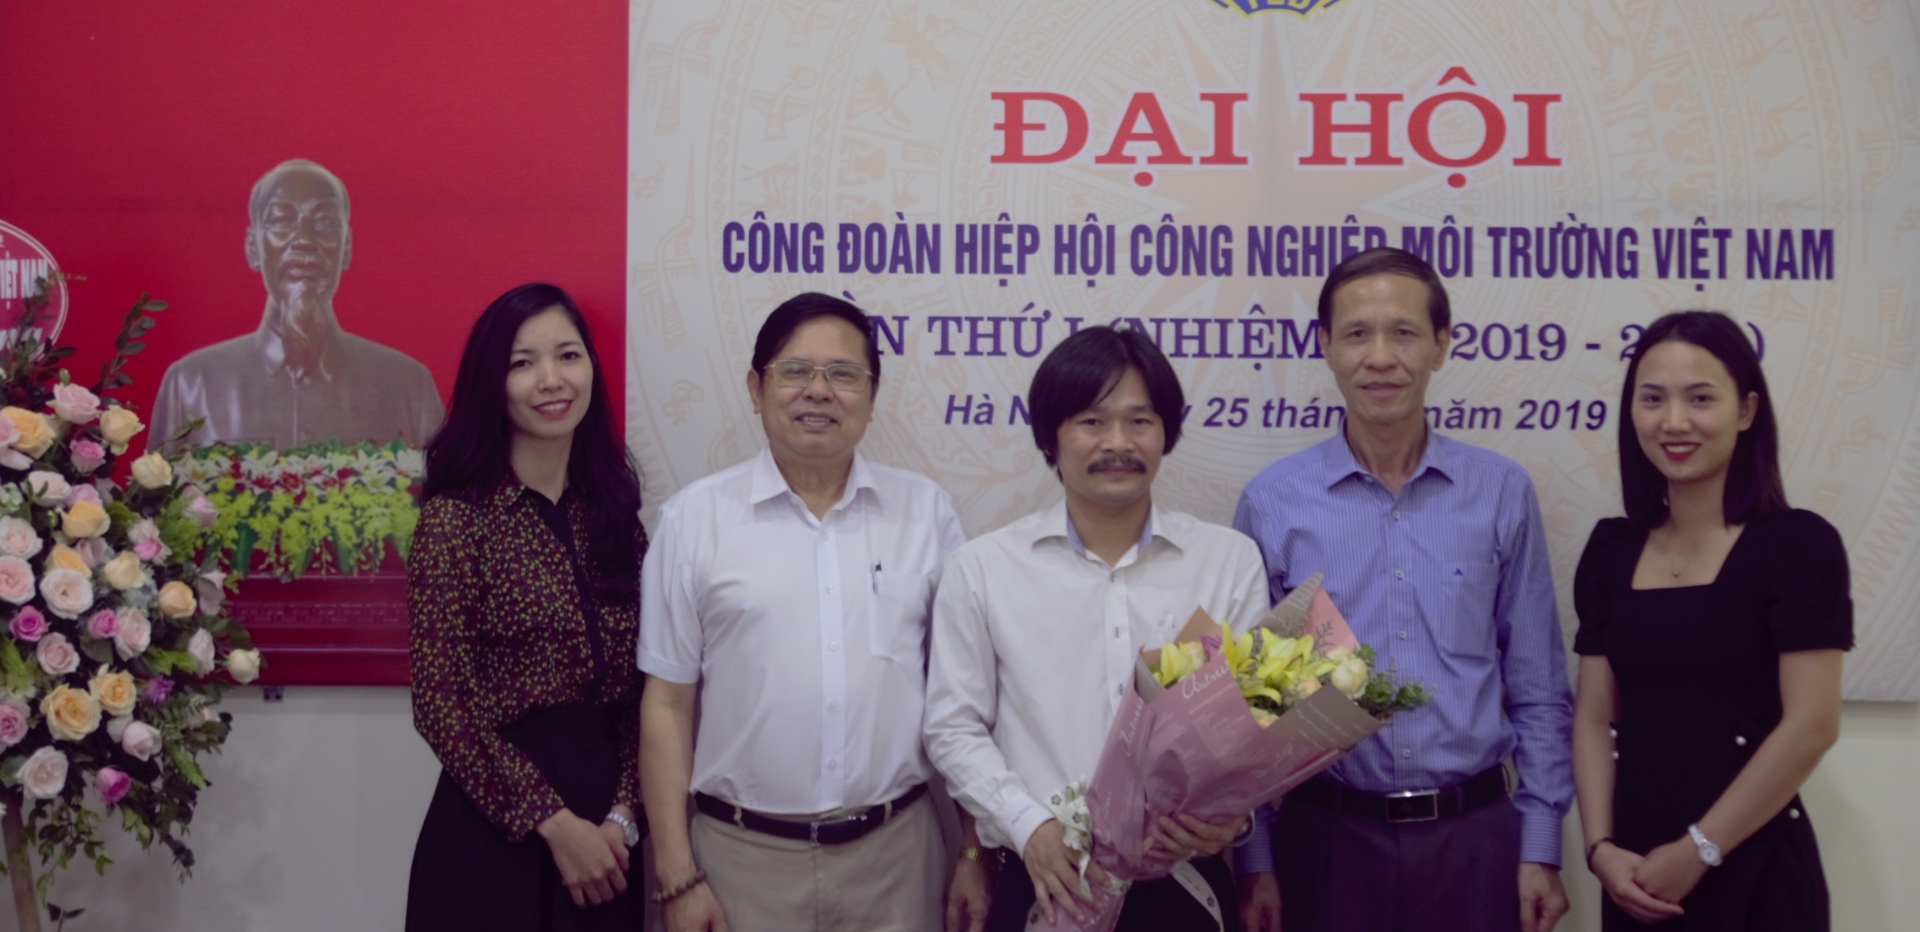 Tổ chức thành công ĐHCĐ Hiệp hội Công nghiệp môi trường Việt Nam